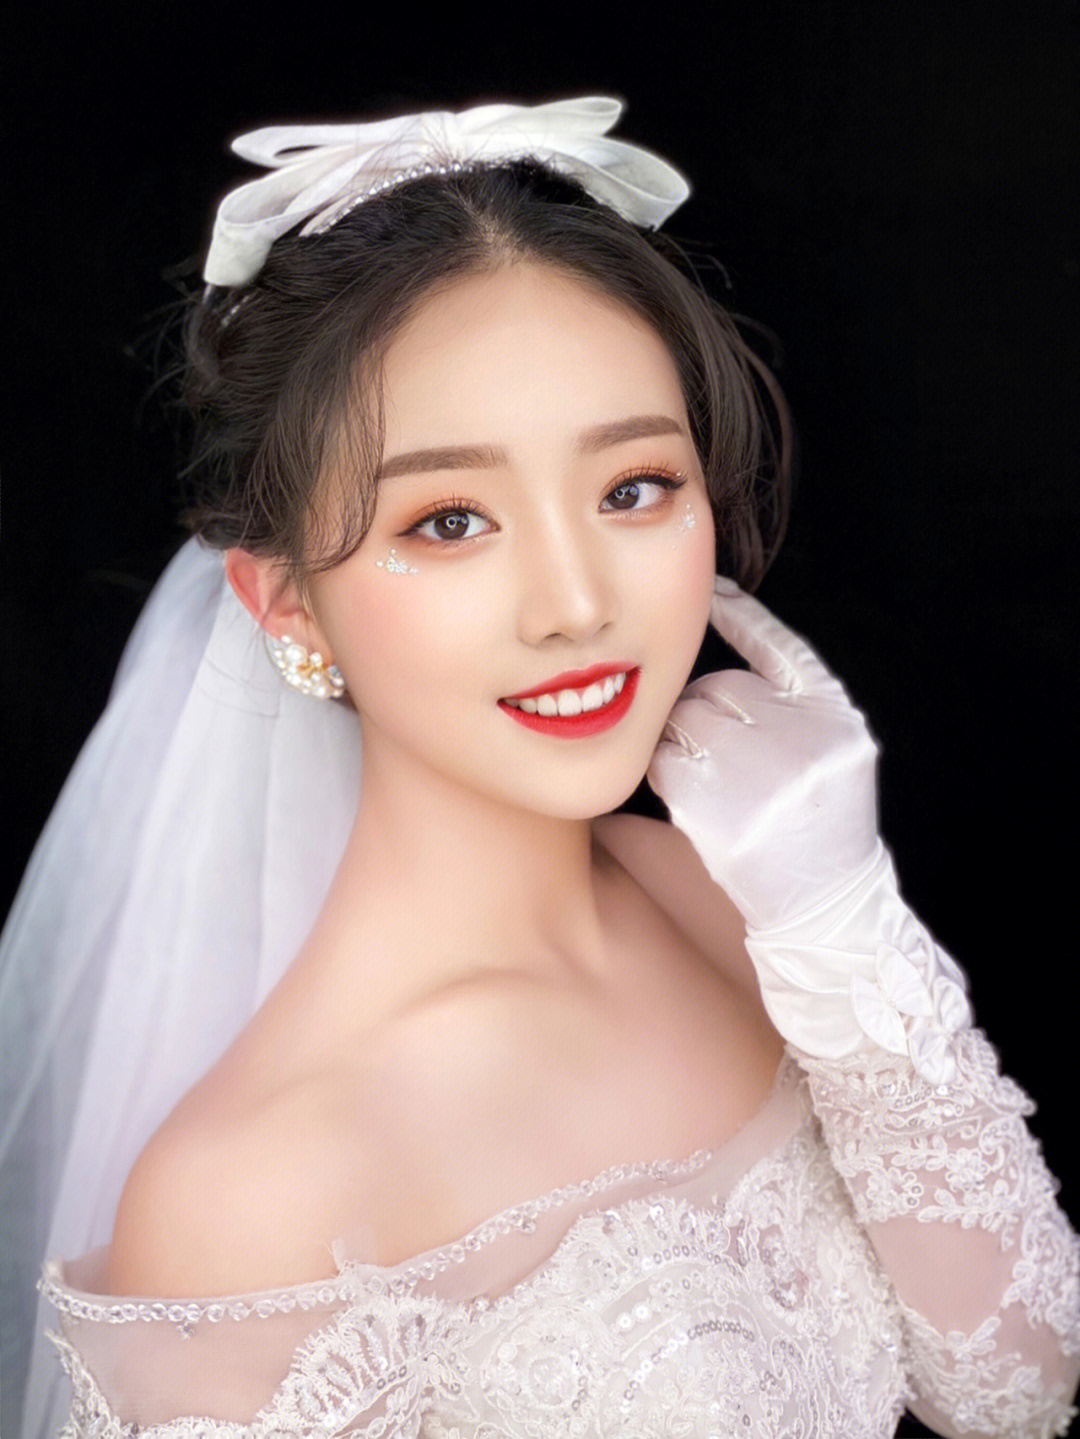 新娘造型是结婚那天的扮靓重点,韩式新娘妆容更显清新温婉感觉,下面